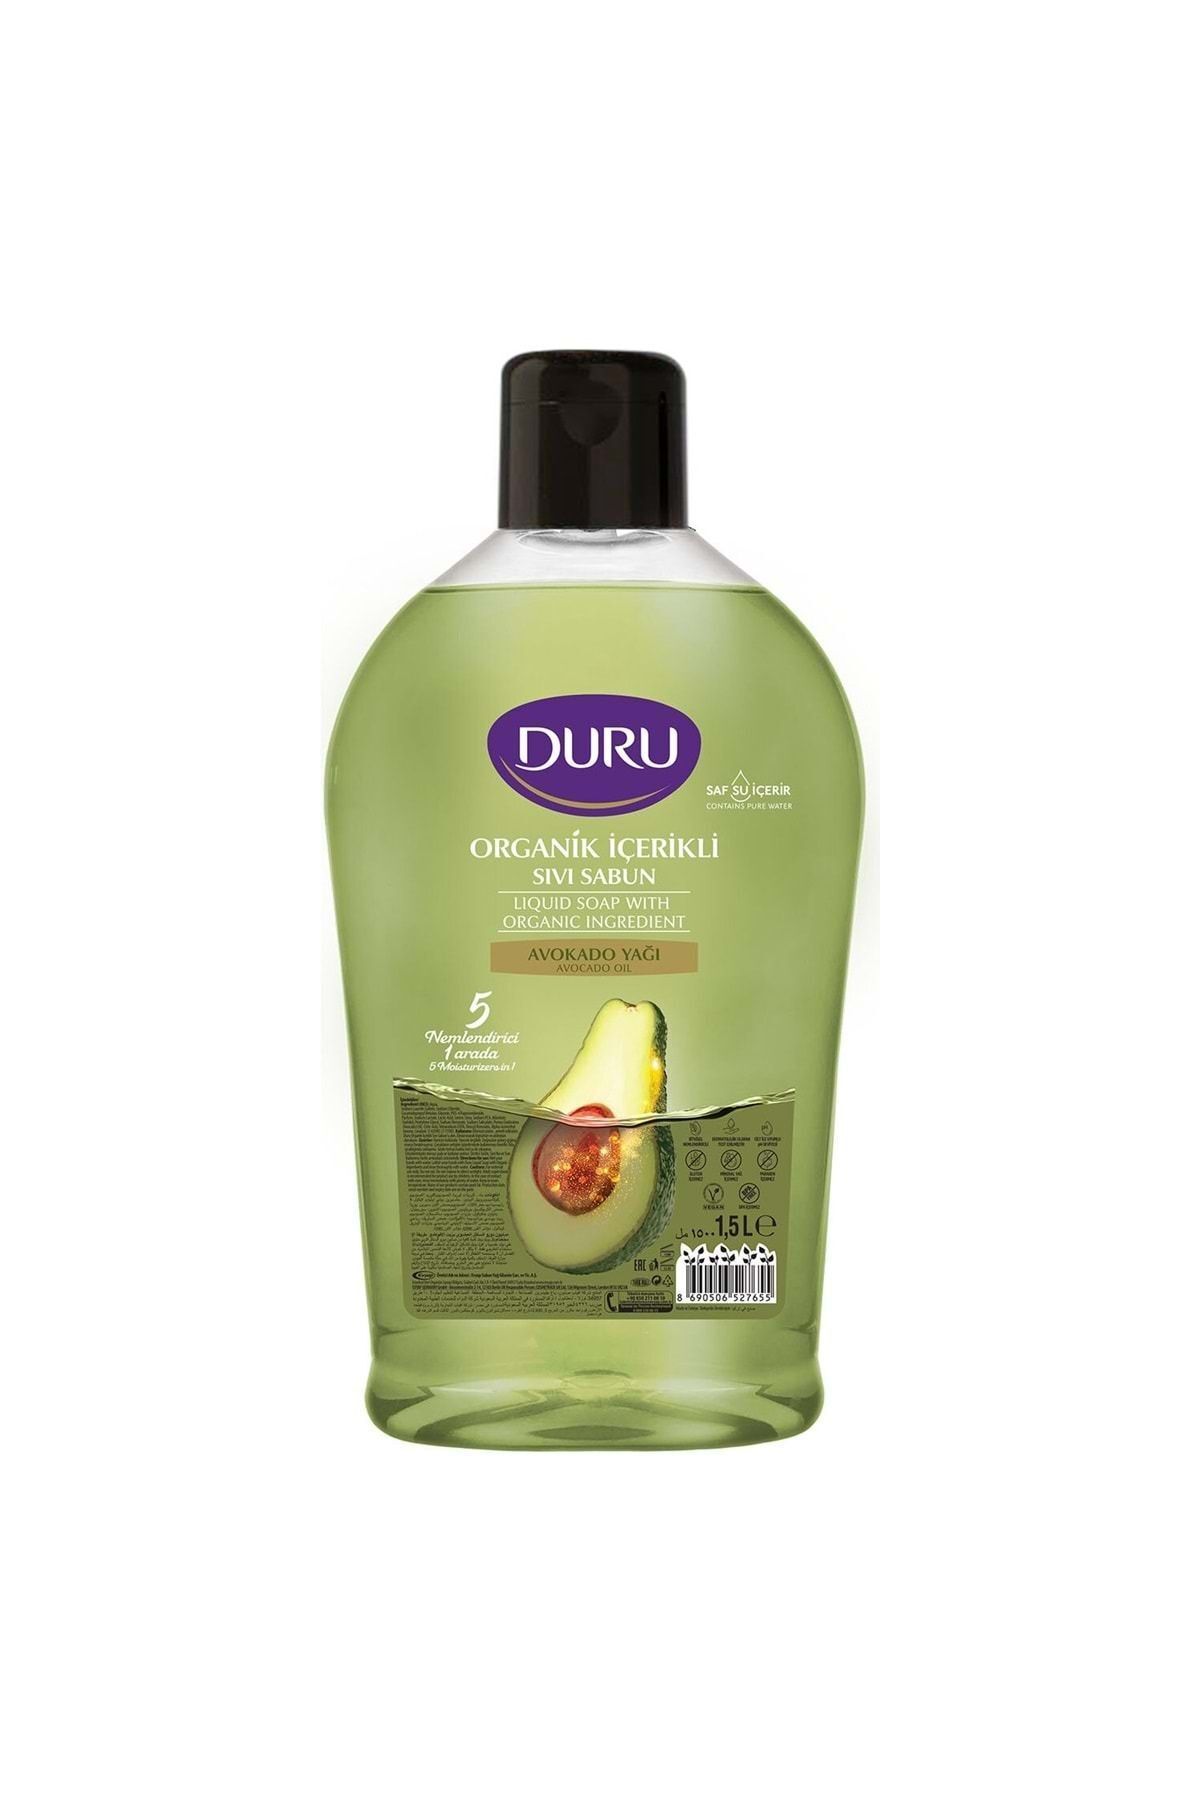 Duru Organik Içerikli Avokado Sıvı Sabun 1,5lt